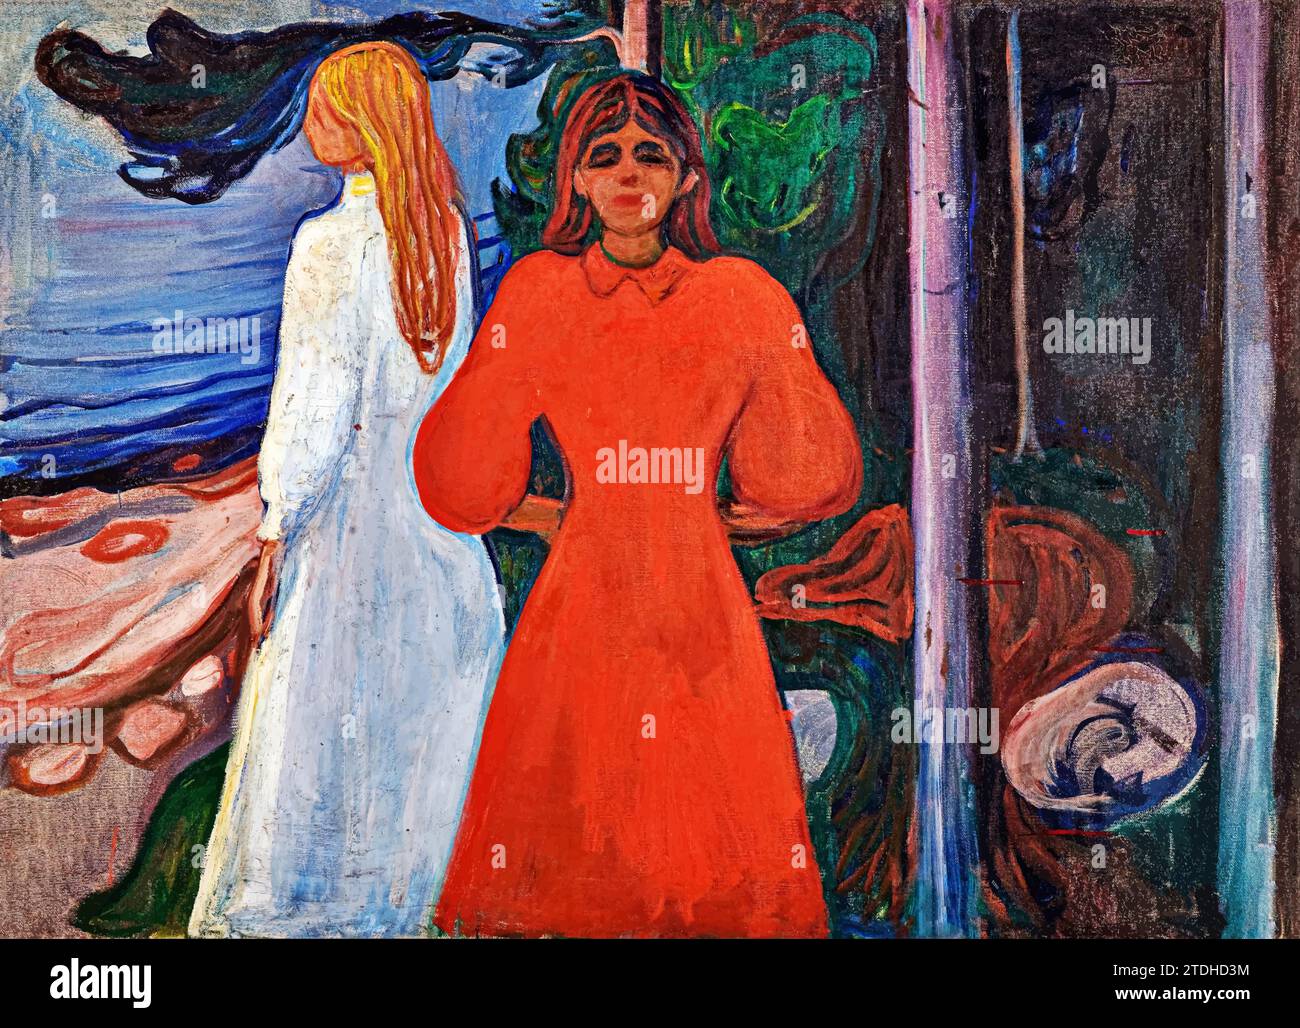 Rouge et blanc, 1899 (peinture) de l'artiste Munch, Edvard (1863-1944) / norvégien. Illustration de Vecteur